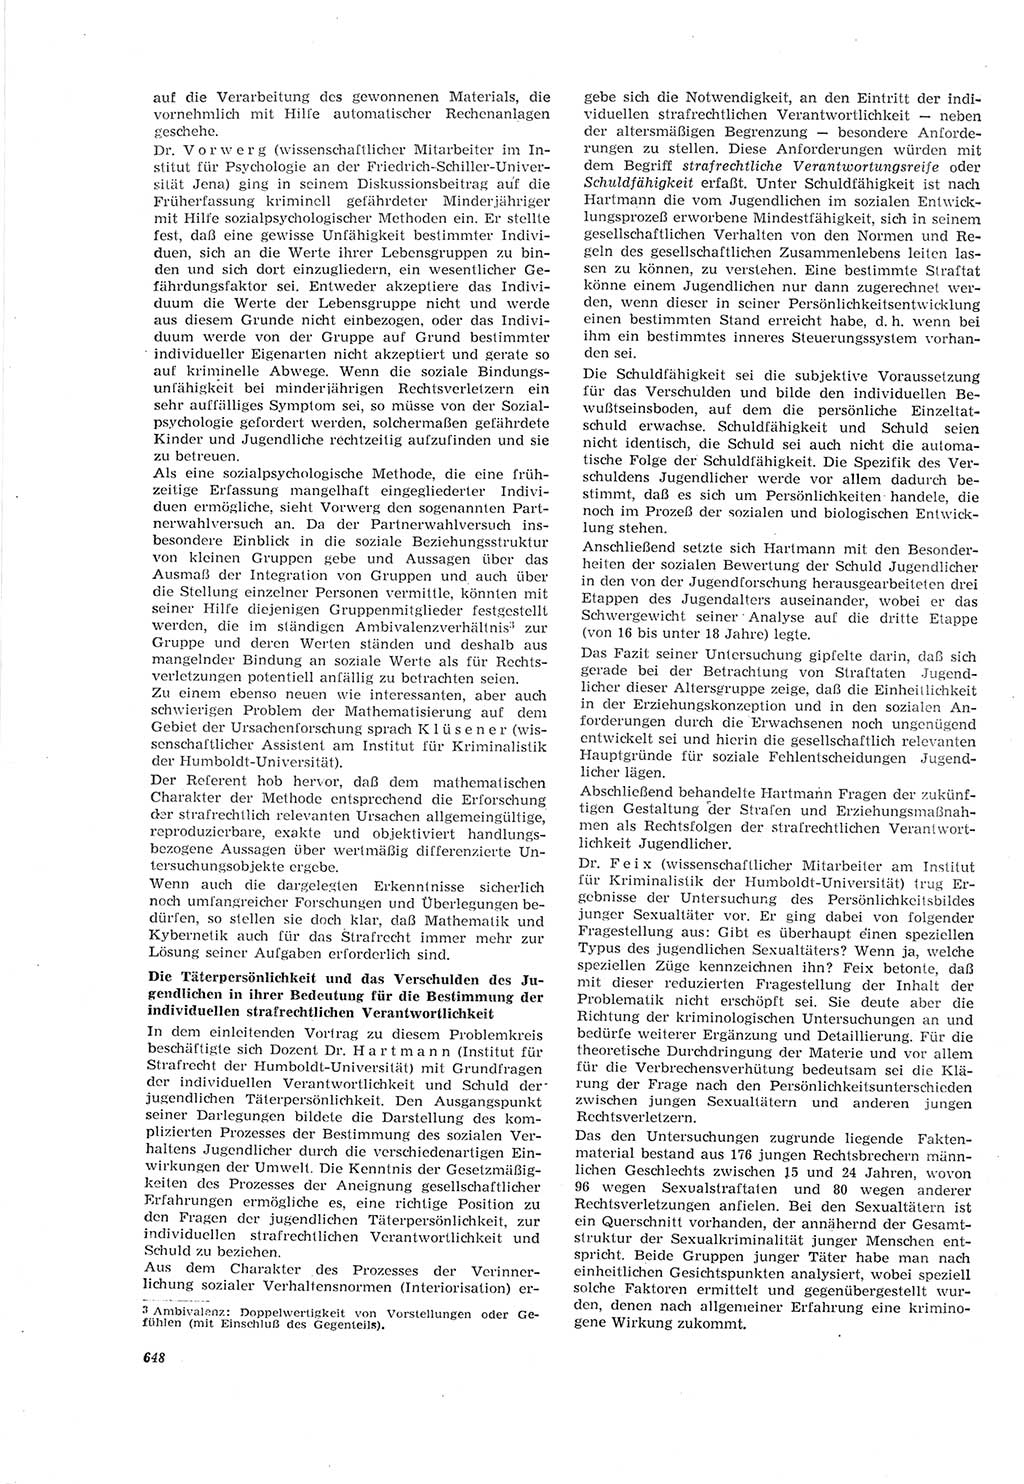 Neue Justiz (NJ), Zeitschrift für Recht und Rechtswissenschaft [Deutsche Demokratische Republik (DDR)], 18. Jahrgang 1964, Seite 648 (NJ DDR 1964, S. 648)